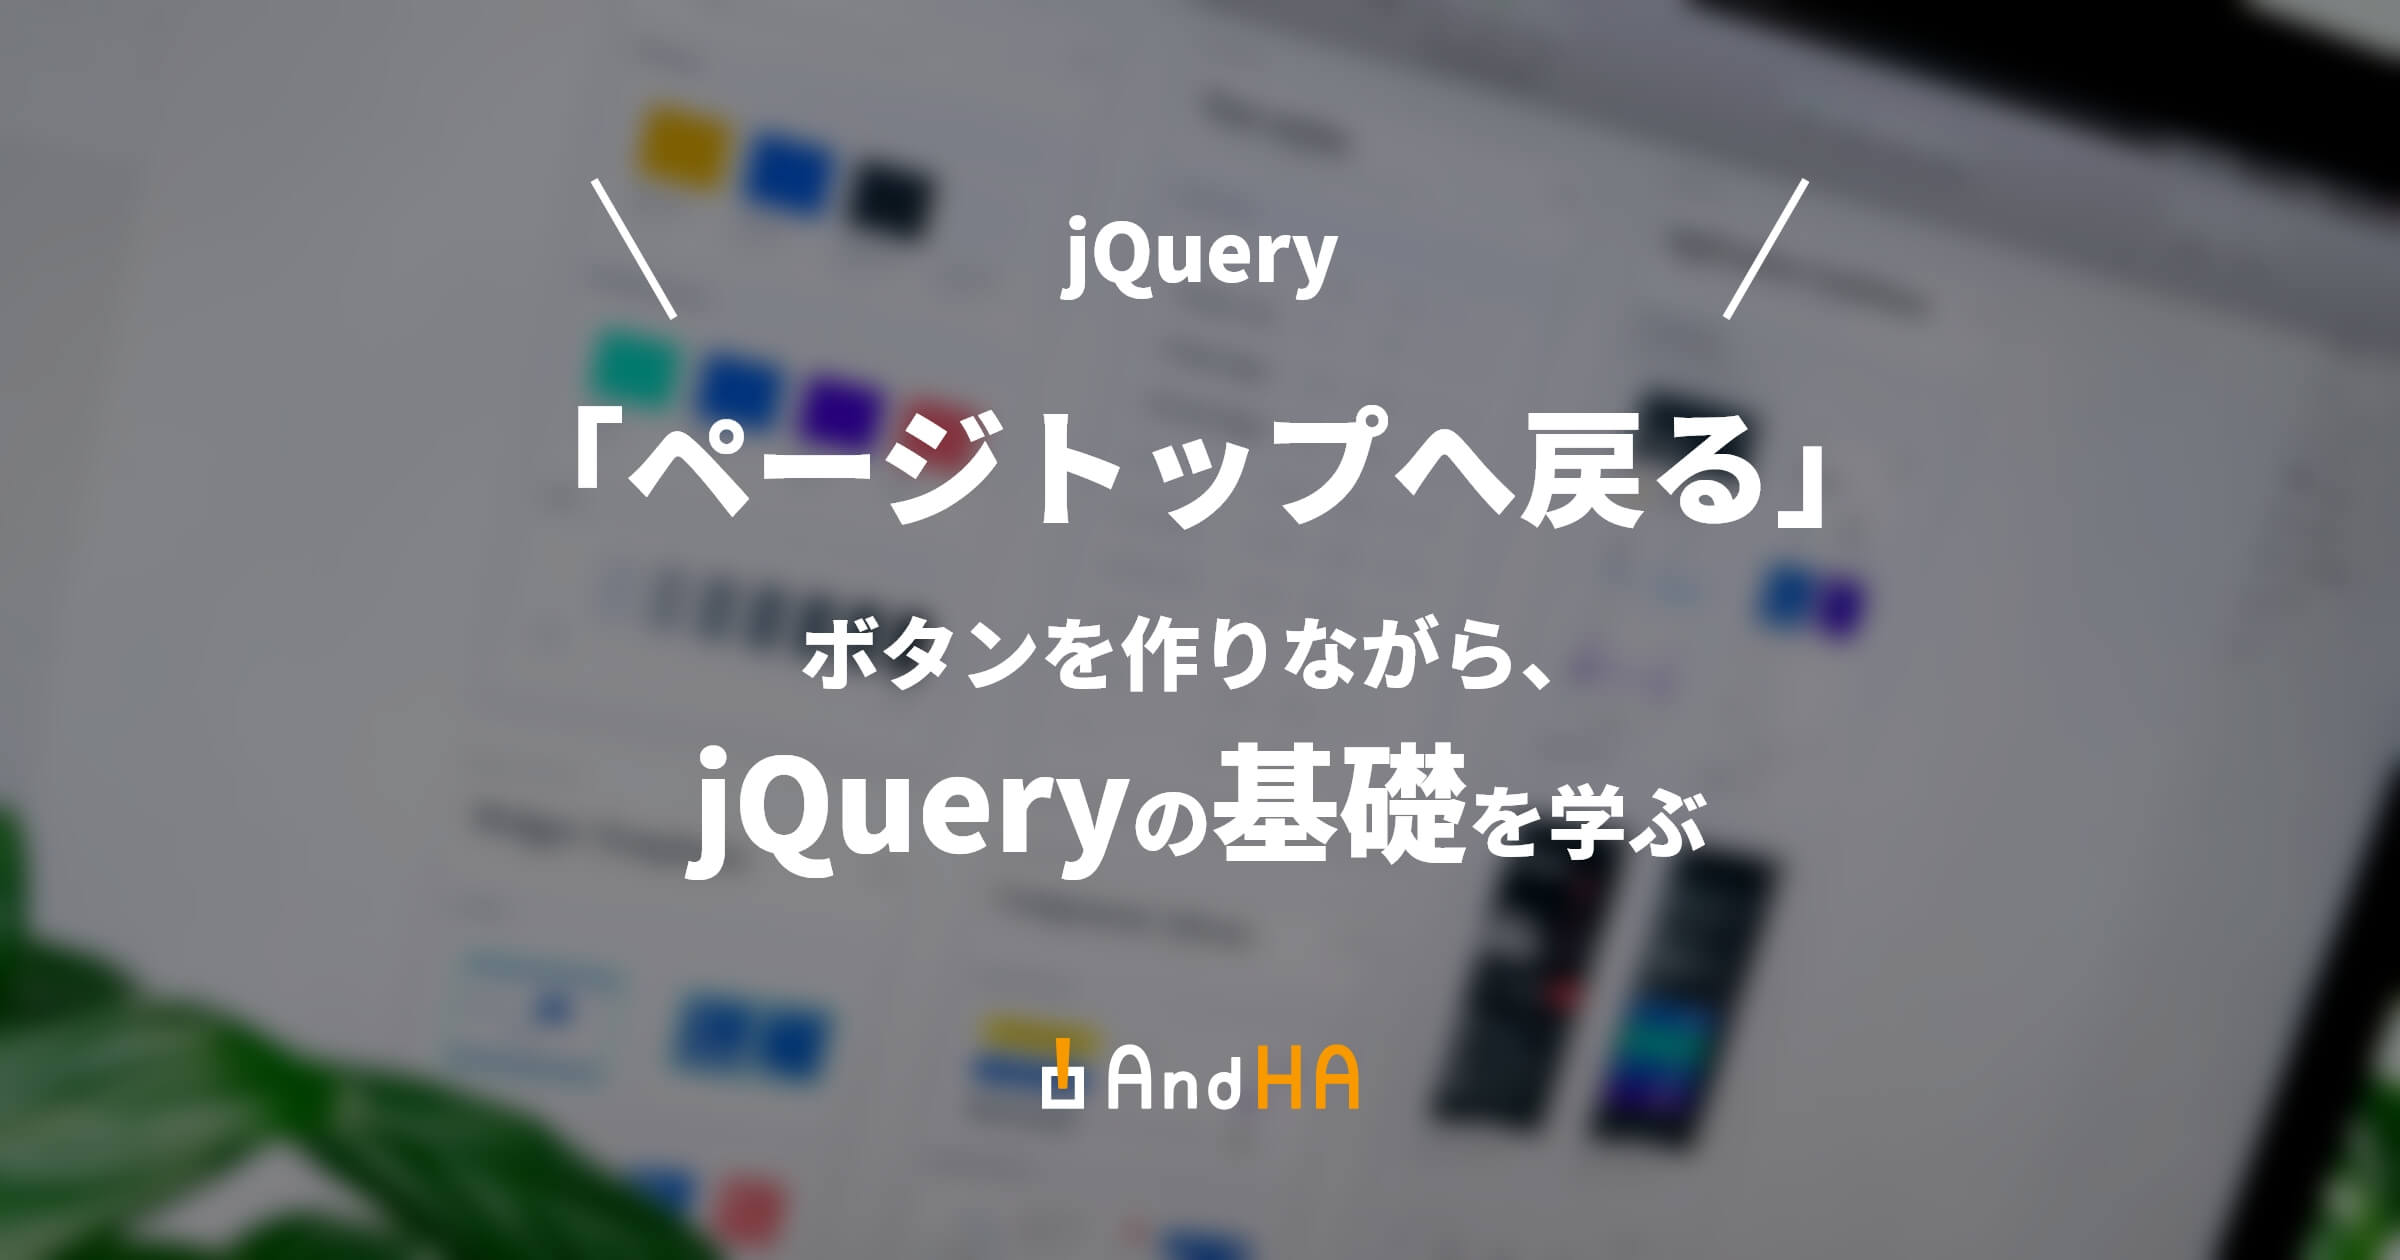 【jQuery】「ページトップへ戻る」ボタンを作りながら、jQueryの基礎を学ぶ